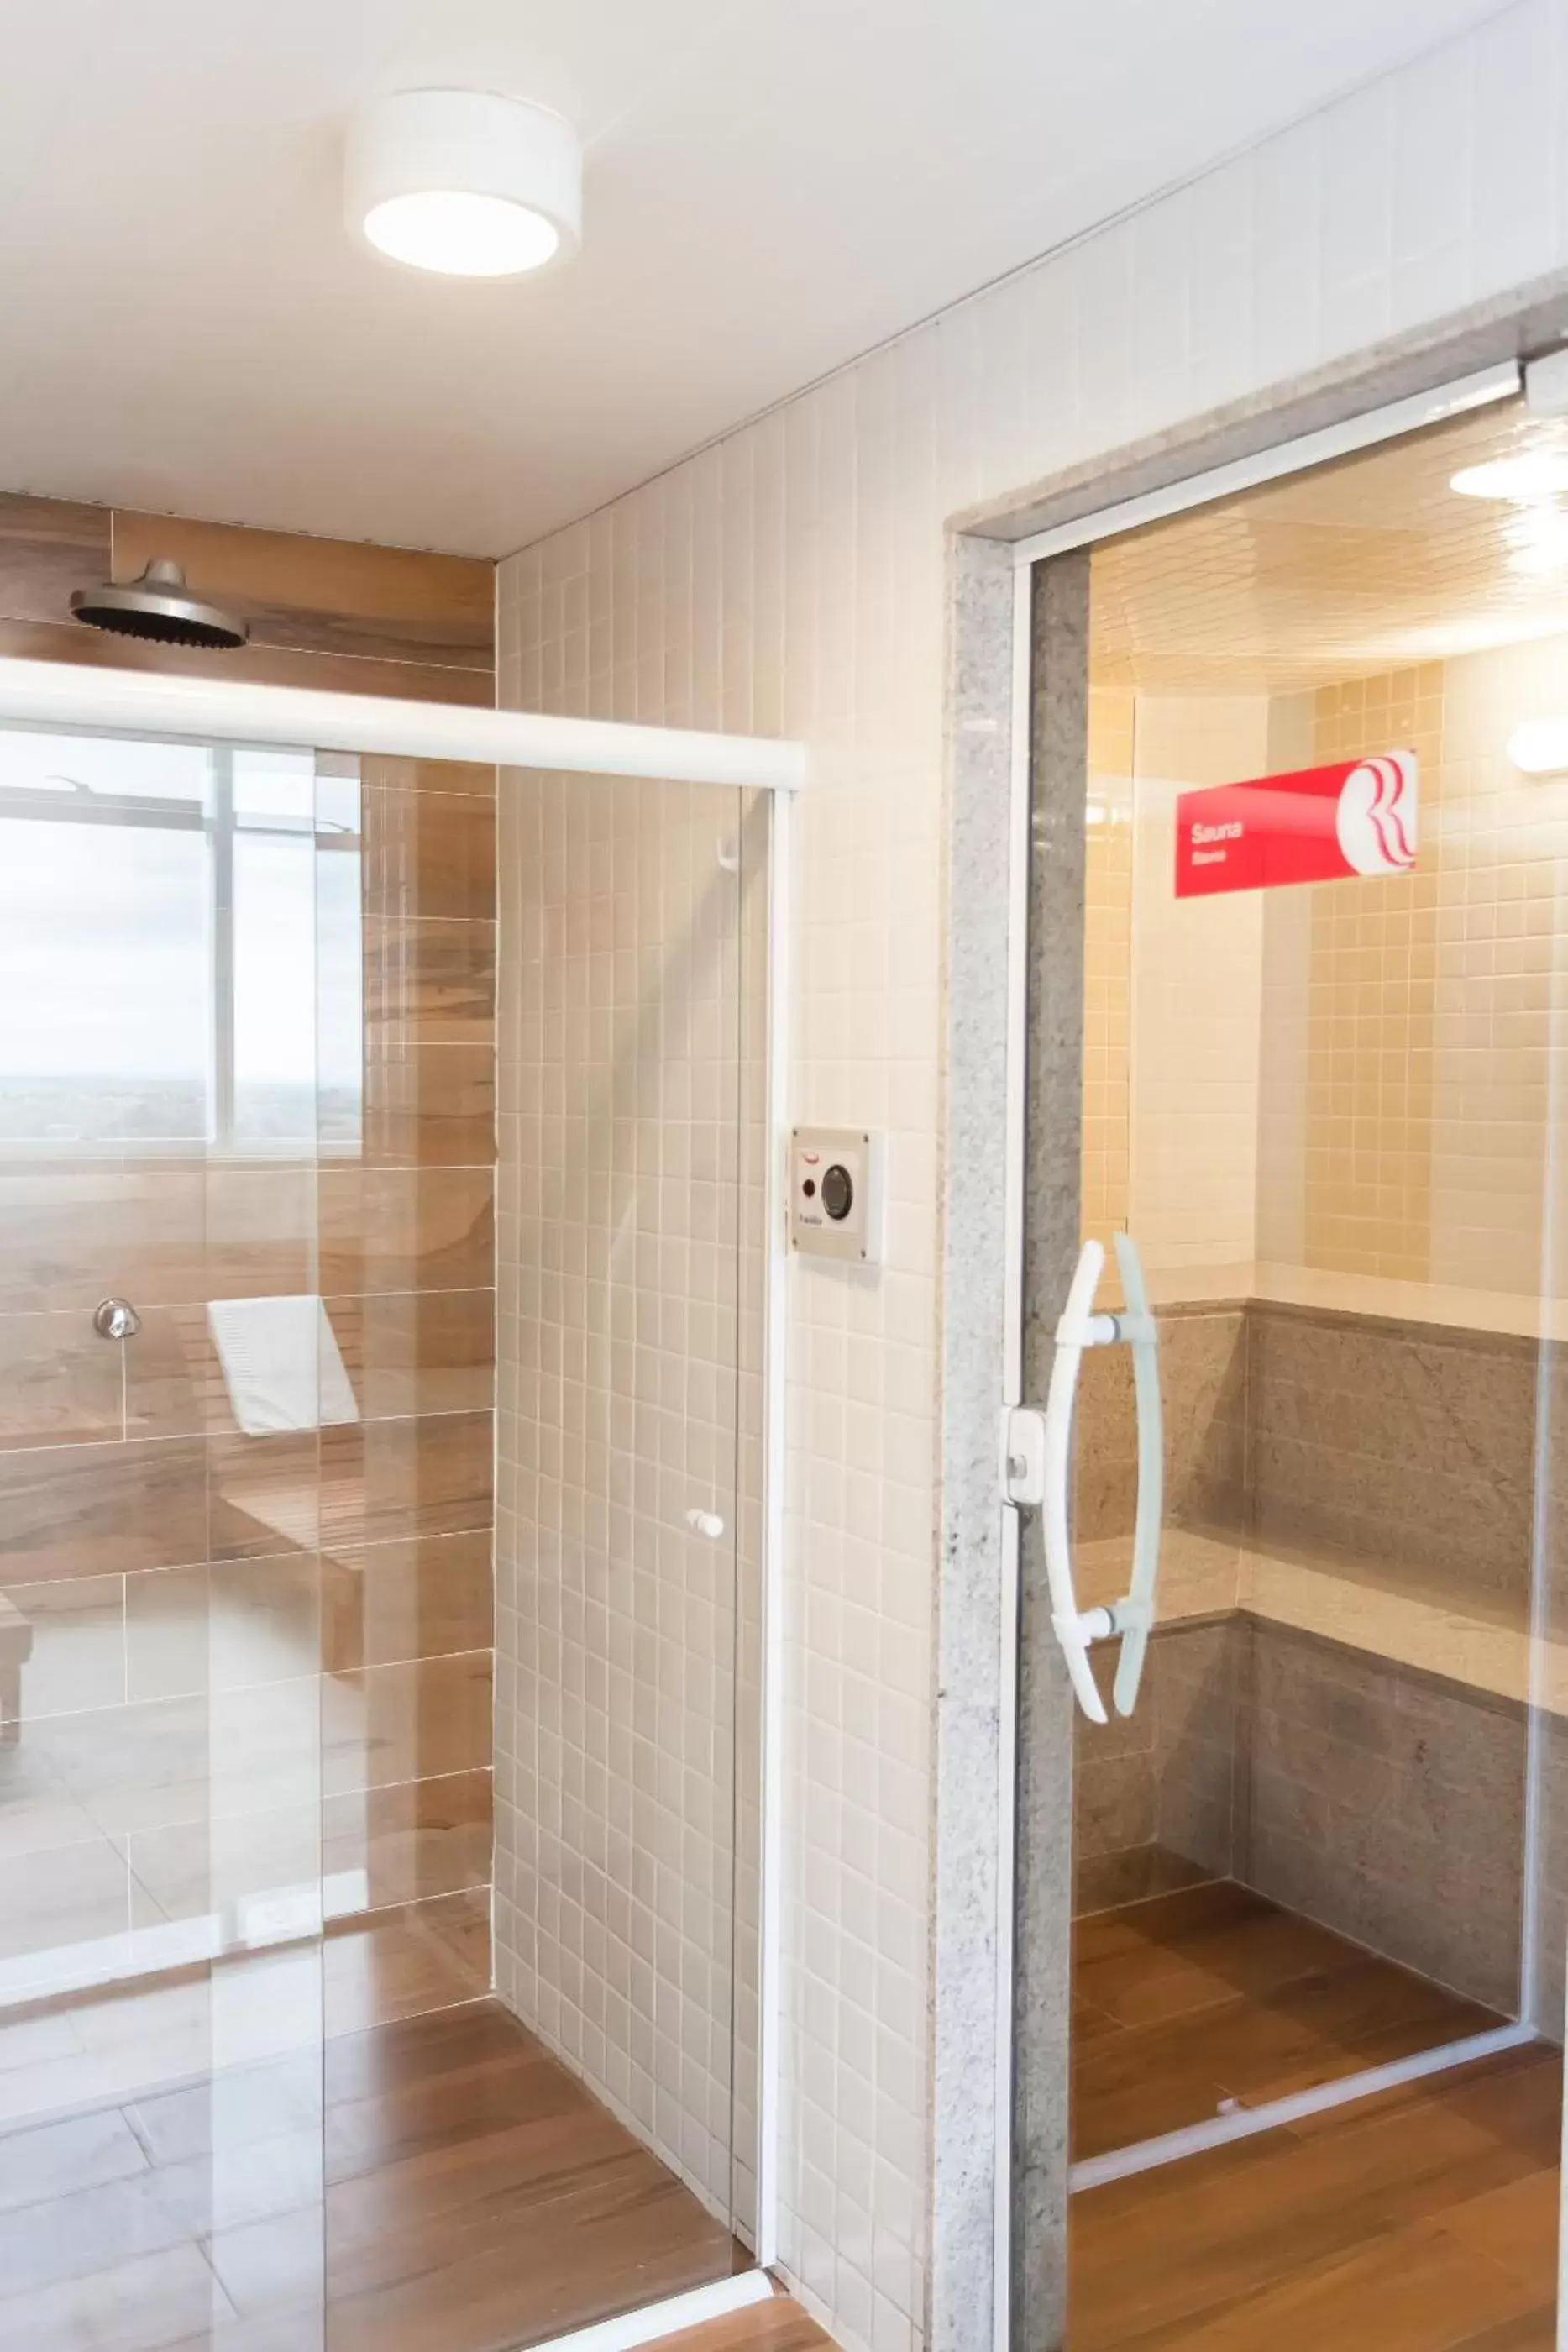 Area and facilities, Bathroom in Ramada Hotel & Suites Campos Pelinca